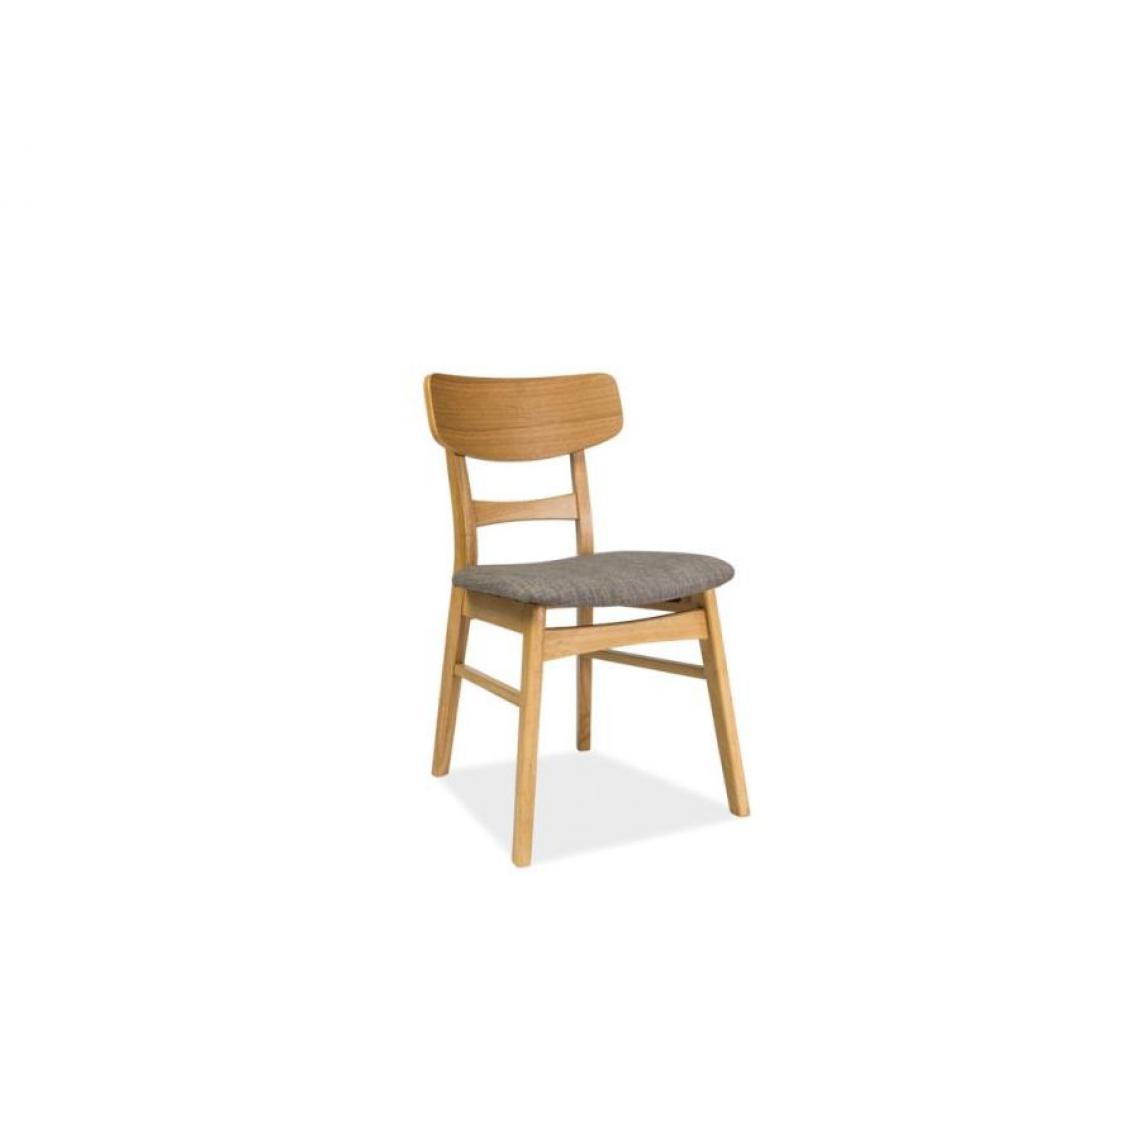 Hucoco - ODIS | Chaise en bois salle à manger salon bureau | Dimensions 76x47x42 cm | Assise rembourrée de tissu | Pieds en bois - Gris - Chaises